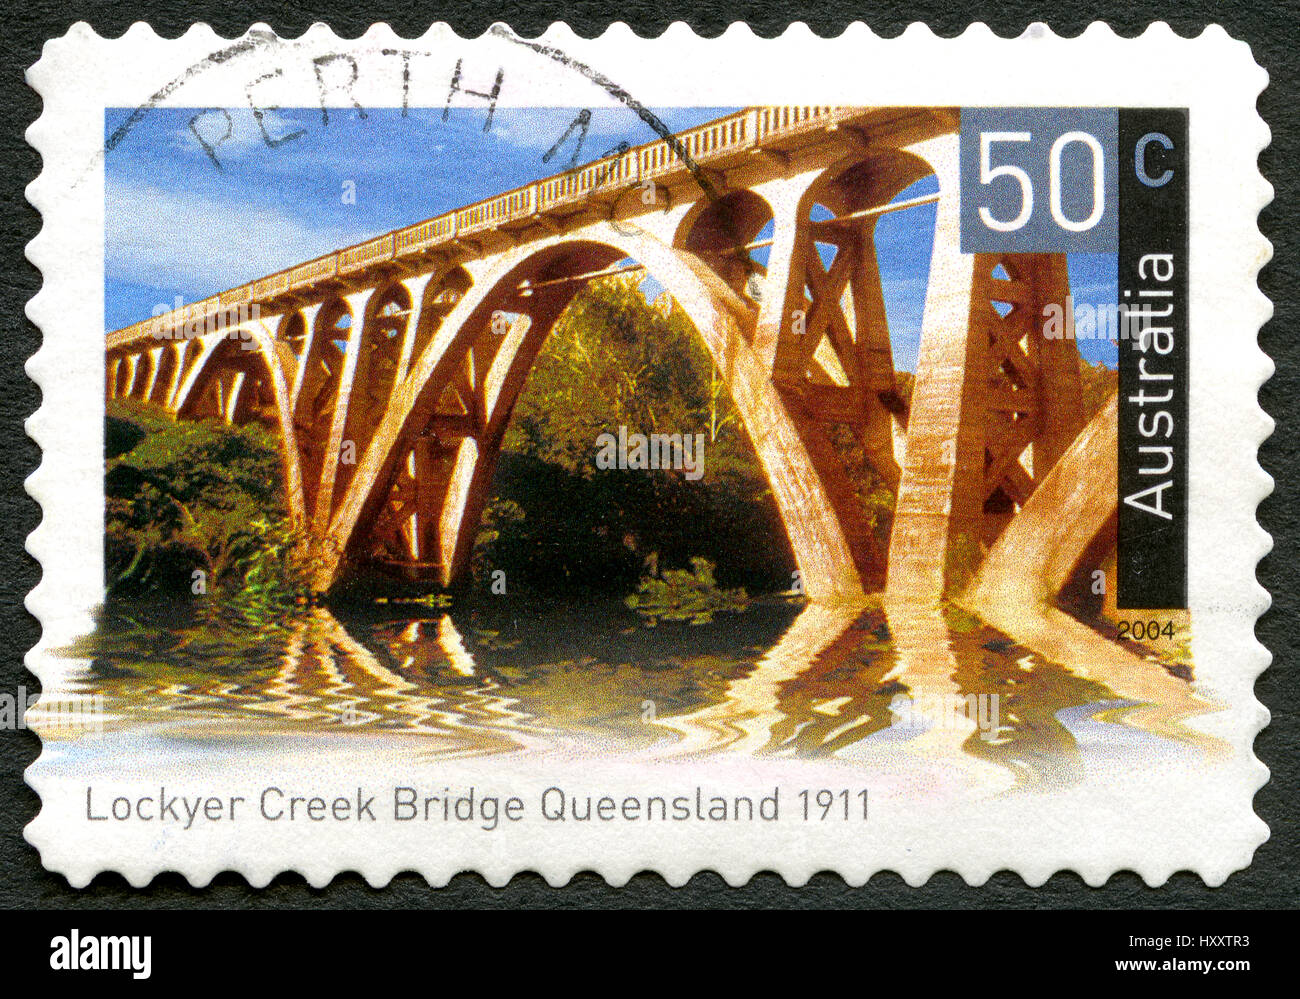 Australien - ca. 2004: Eine gebrauchte Briefmarke aus Australien, ein Bild von Lockyer Creek Bridge in Queensland, Australien, ca. 2004. Stockfoto